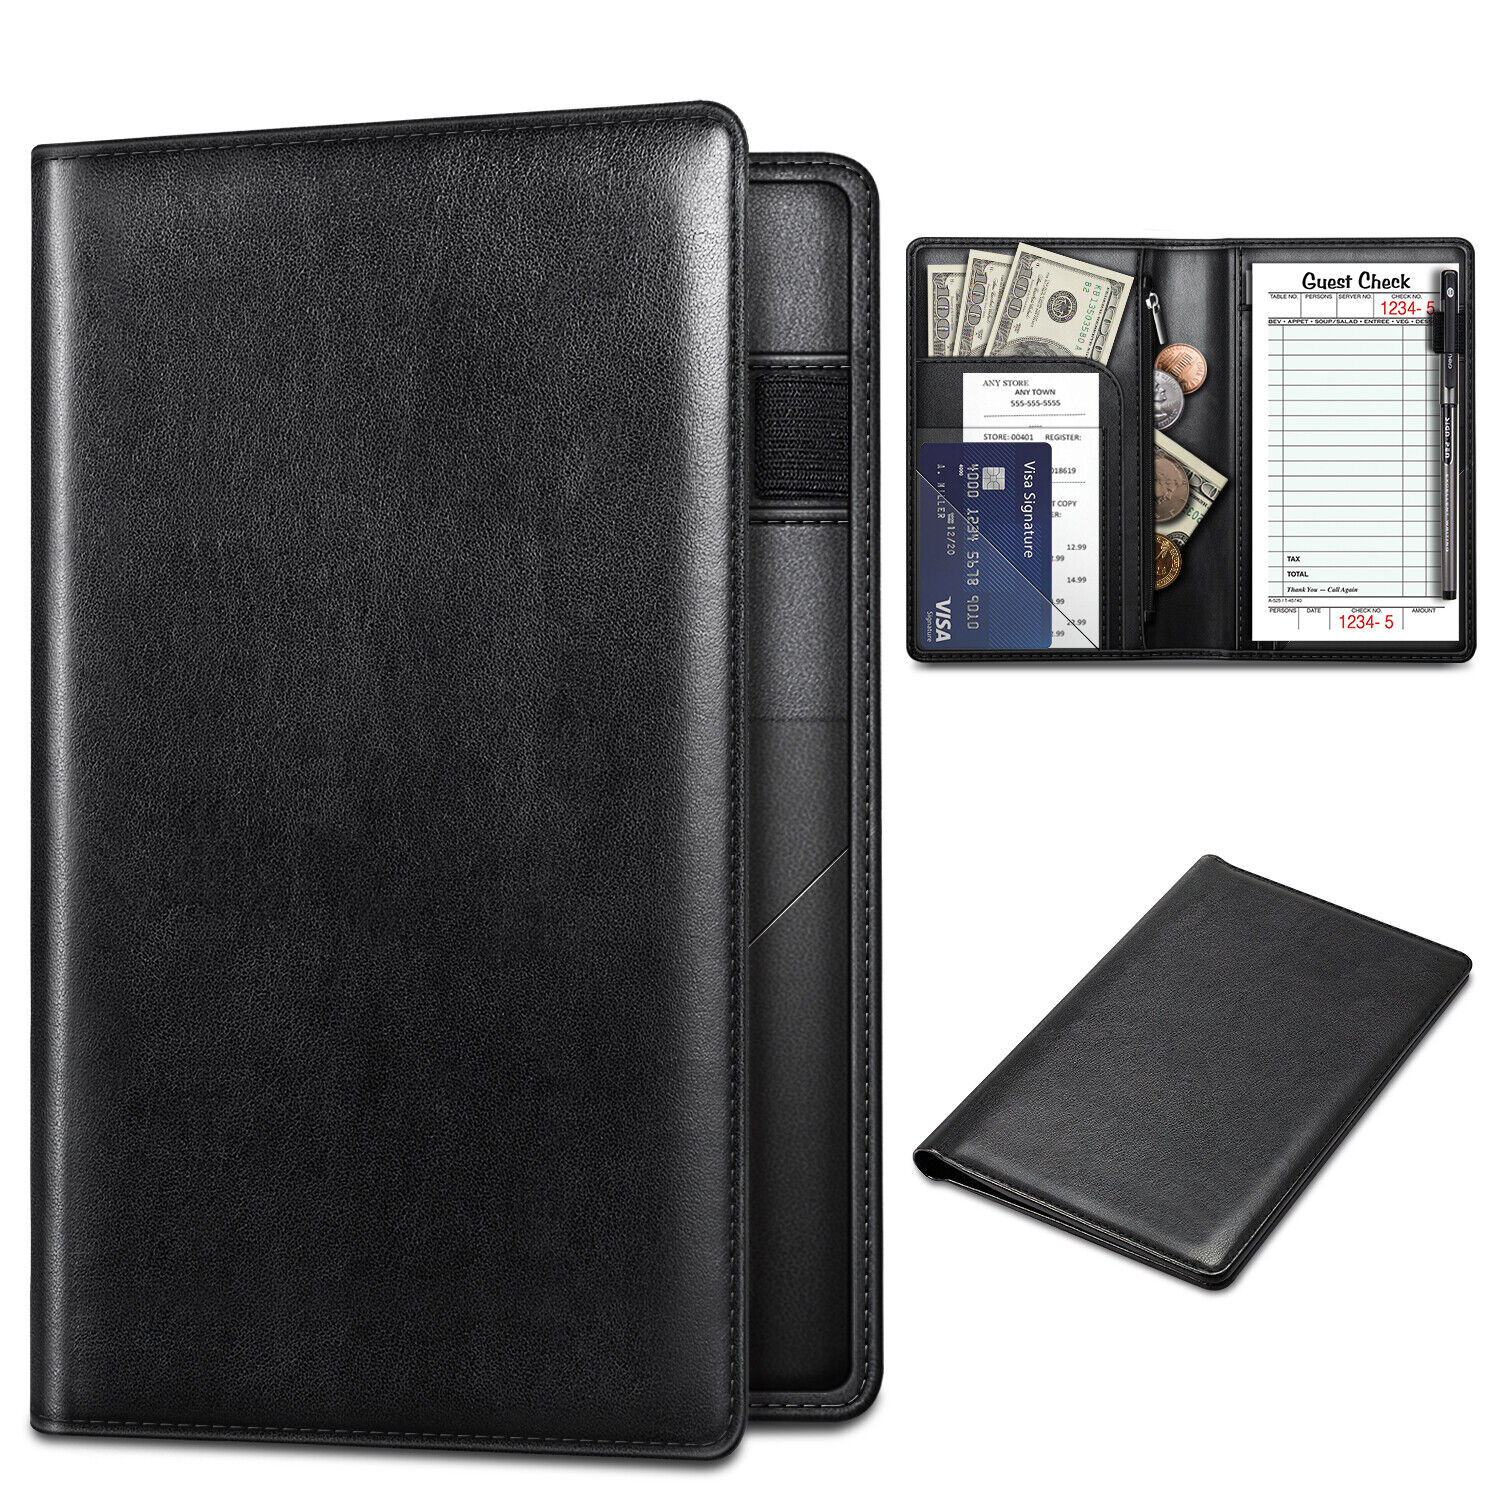 Server Book Organizer Zipper Pocket for Waitress Waiter Bartender Card Holder